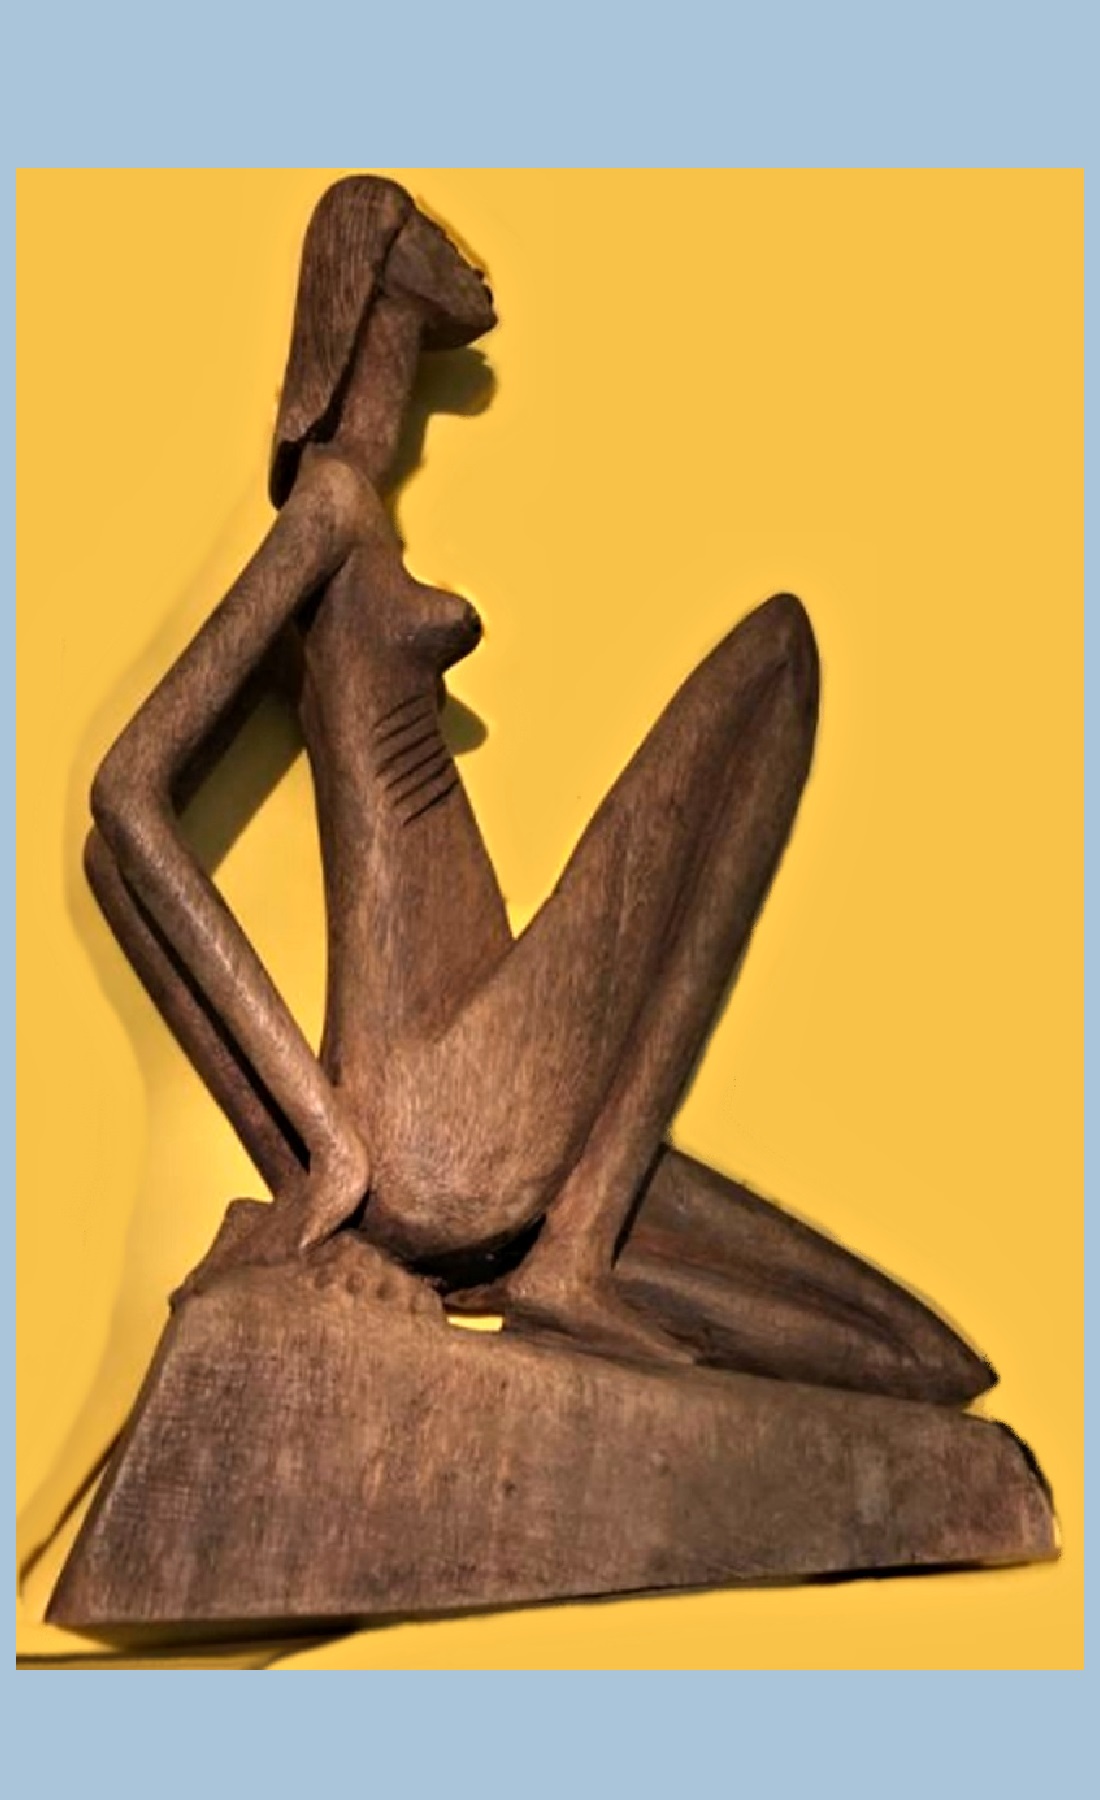 Wooden Sculpture of a Woman